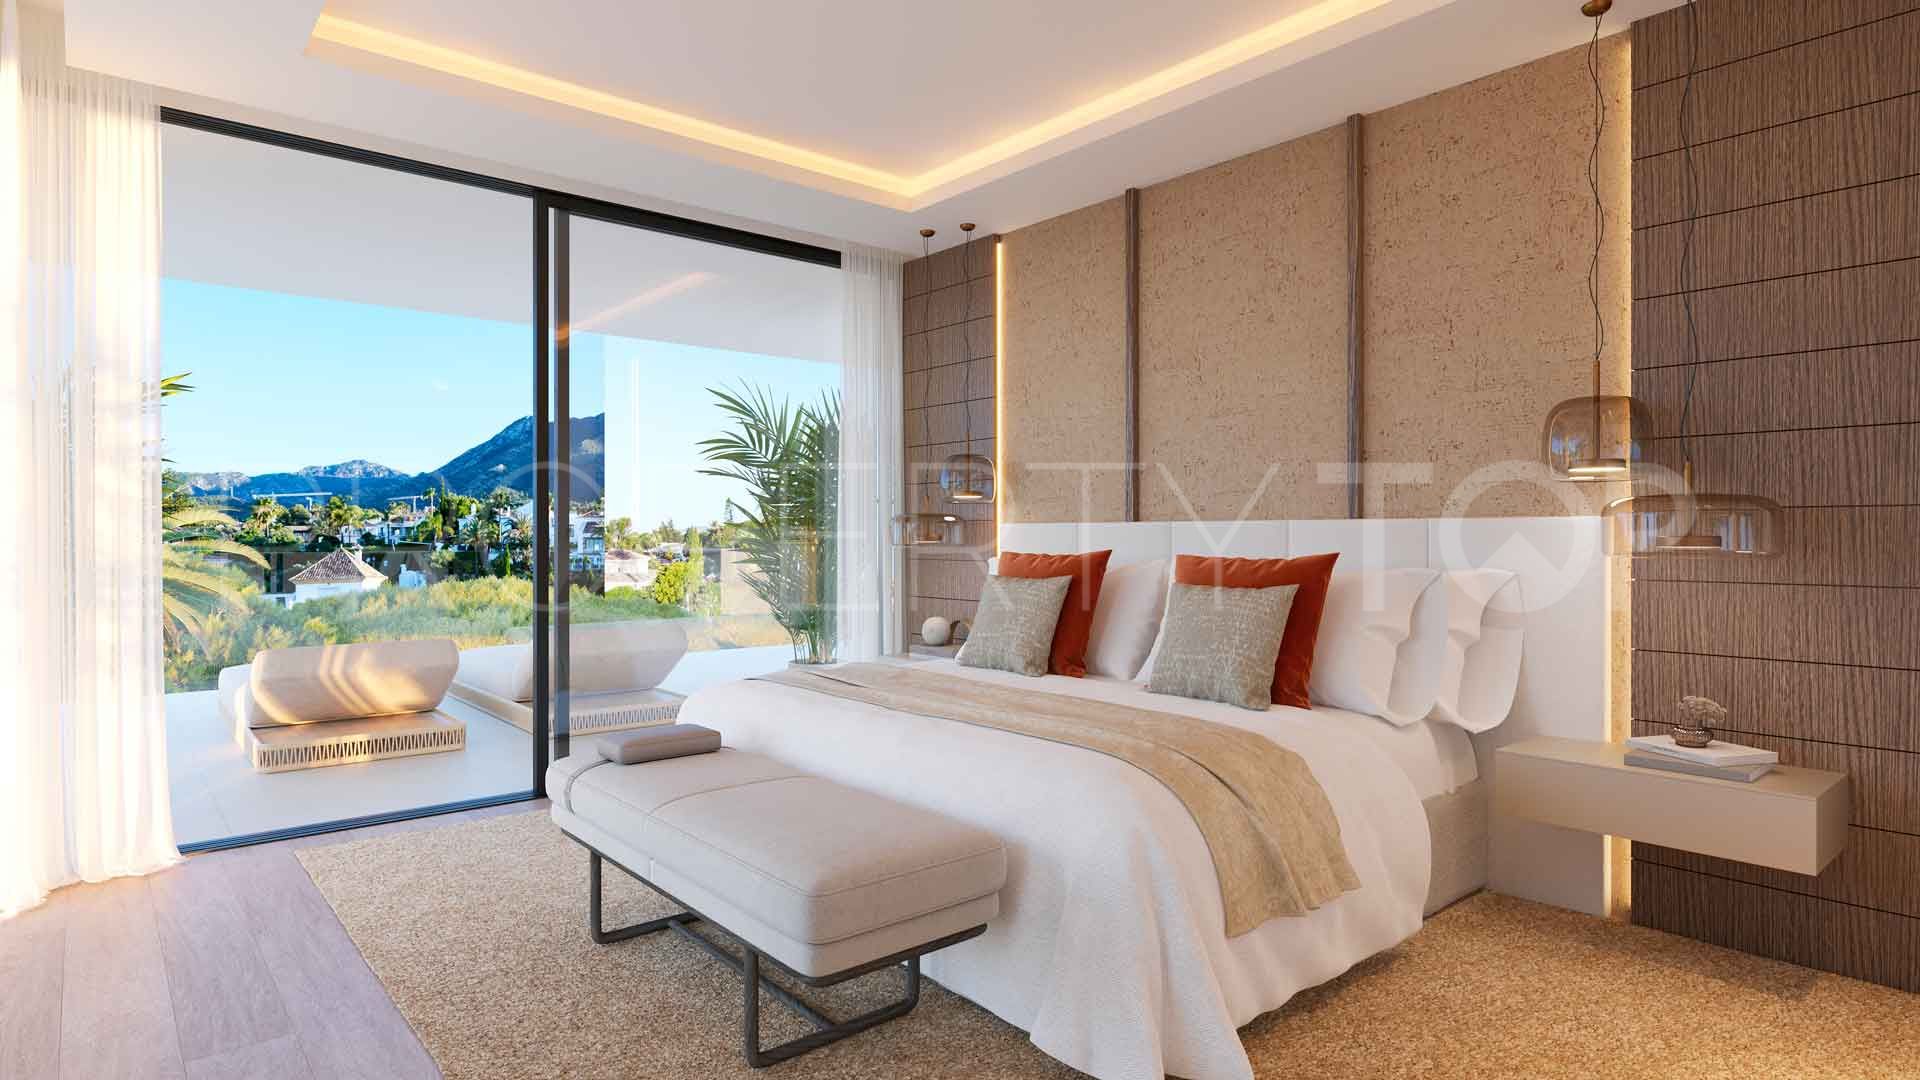 Villa en venta con 6 dormitorios en Real de Zaragoza